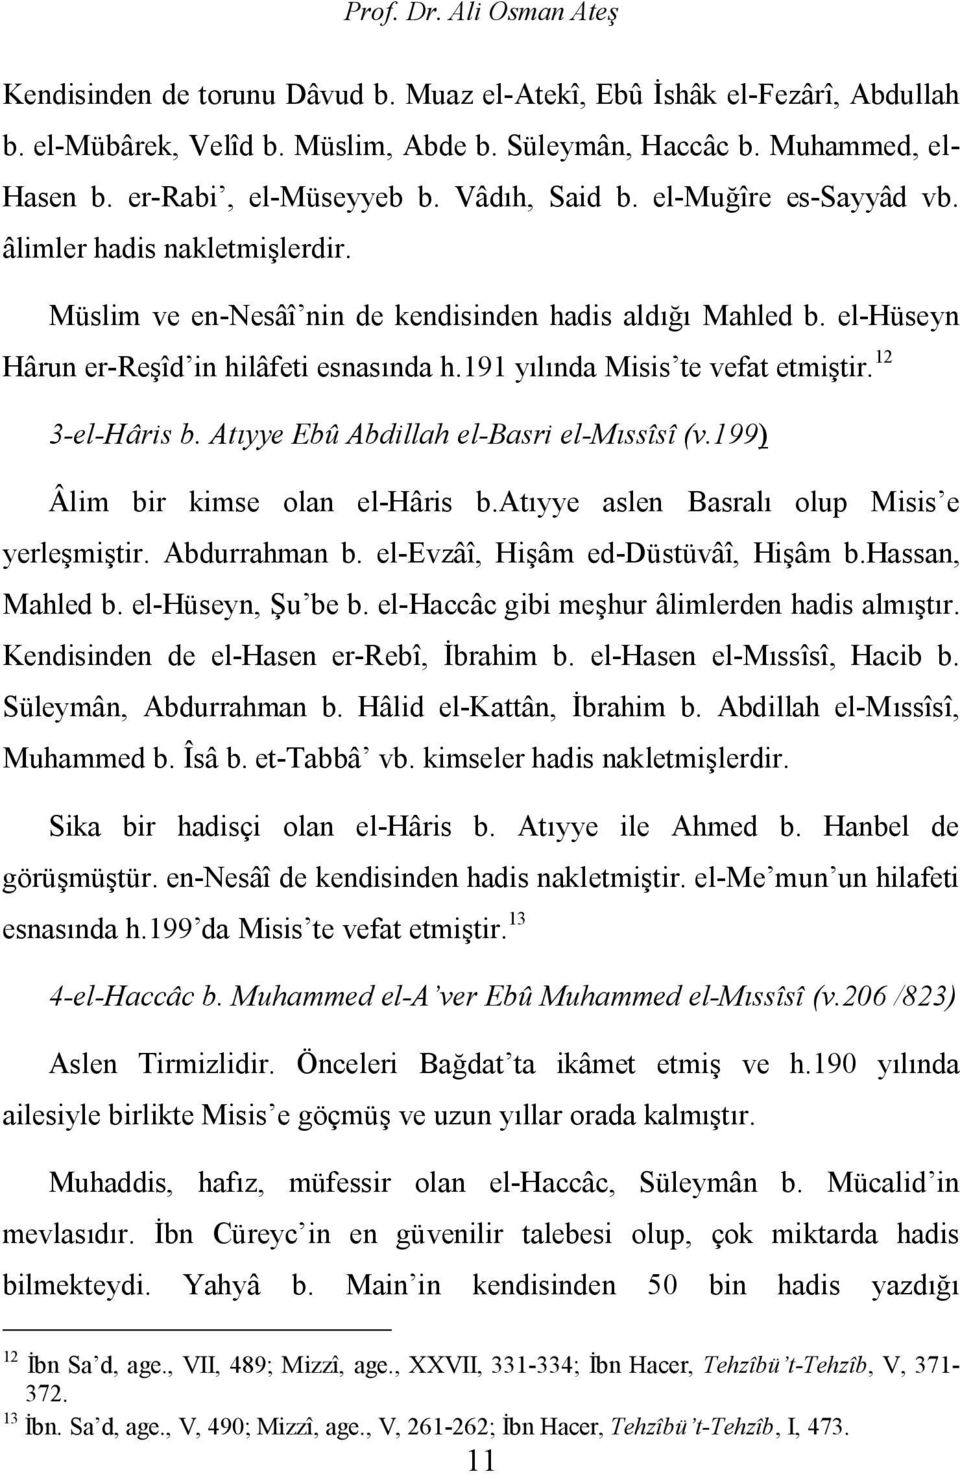 el-hüseyn Hârun er-reşîd in hilâfeti esnasında h.191 yılında Misis te vefat etmiştir. 12 3-el-Hâris b. Atıyye Ebû Abdillah el-basri el-mıssîsî (v.199) Âlim bir kimse olan el-hâris b.